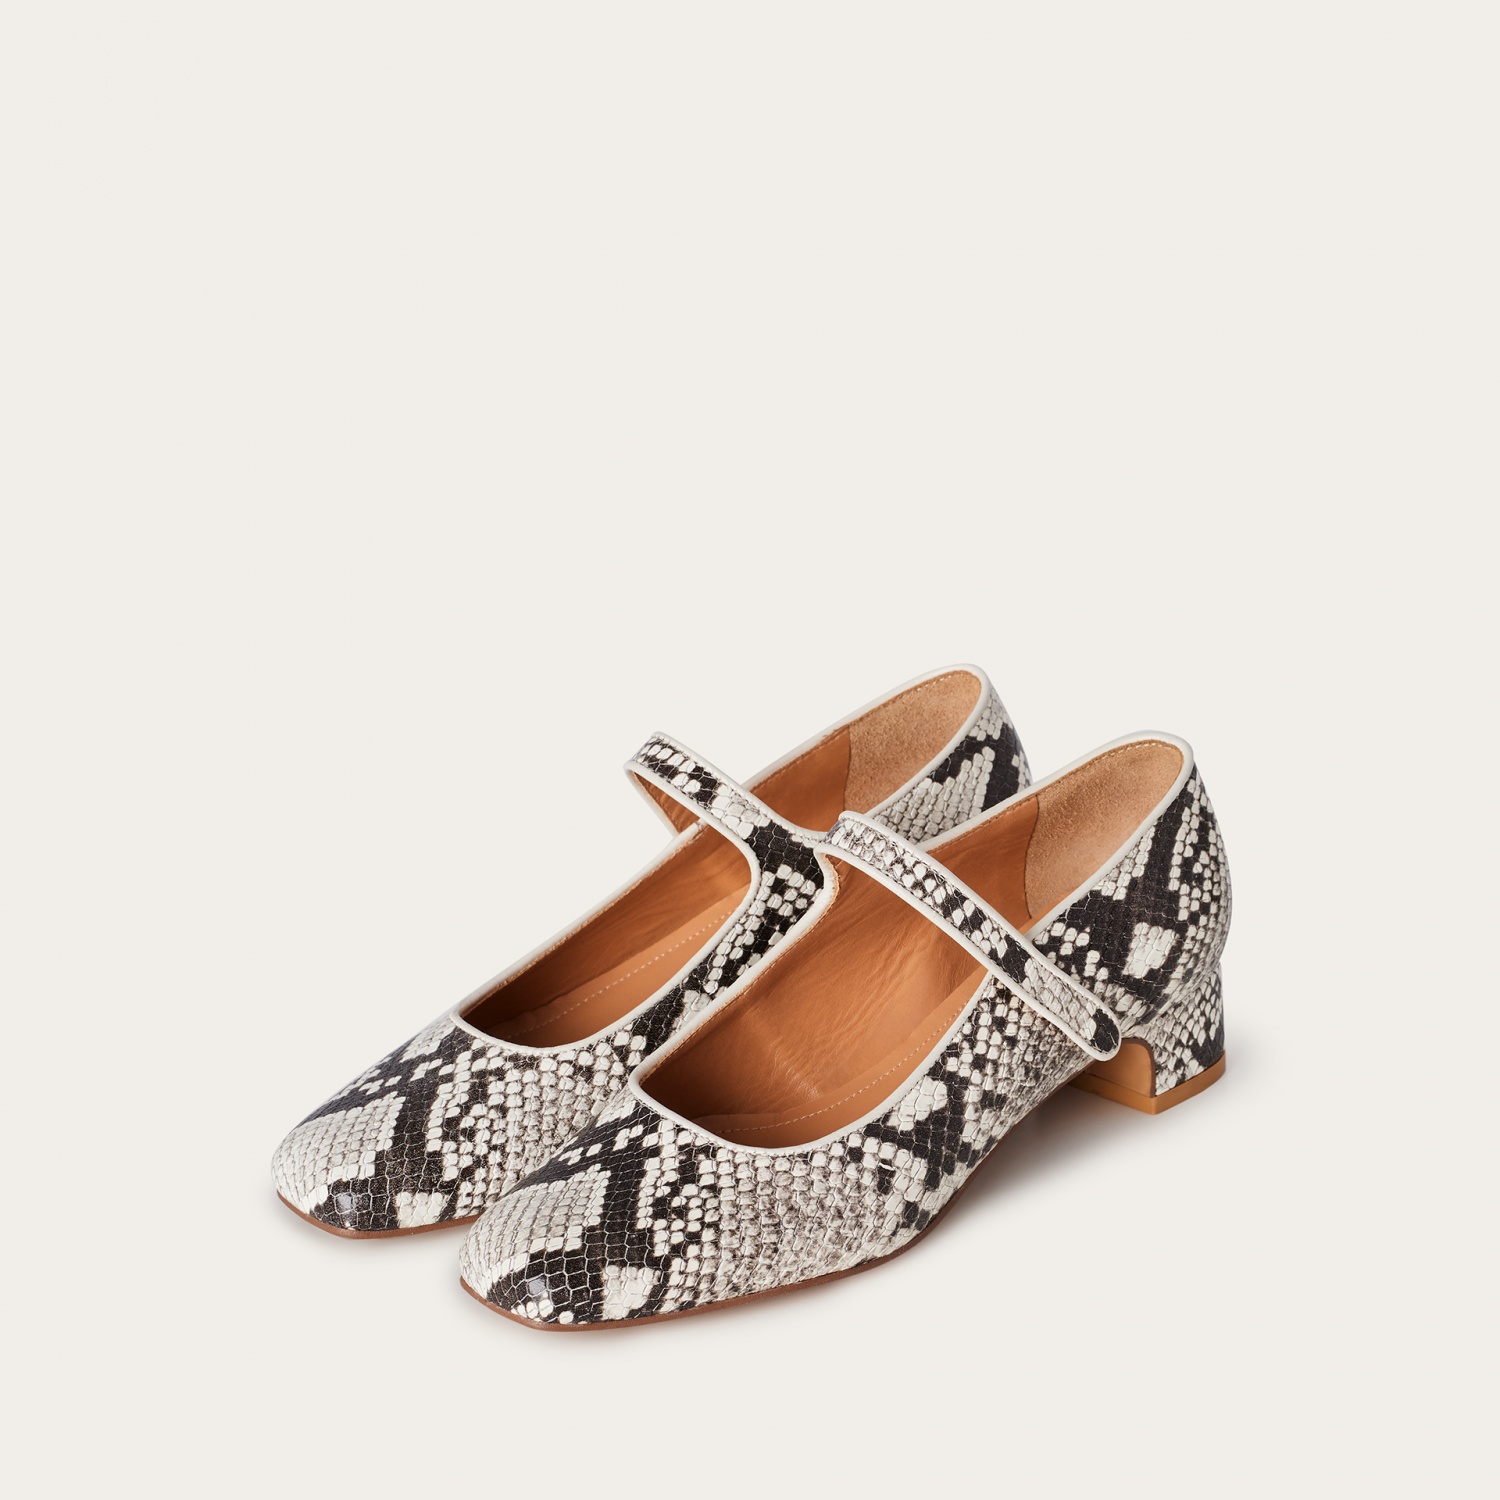  Dora Low Heels, off white python pattern-9 